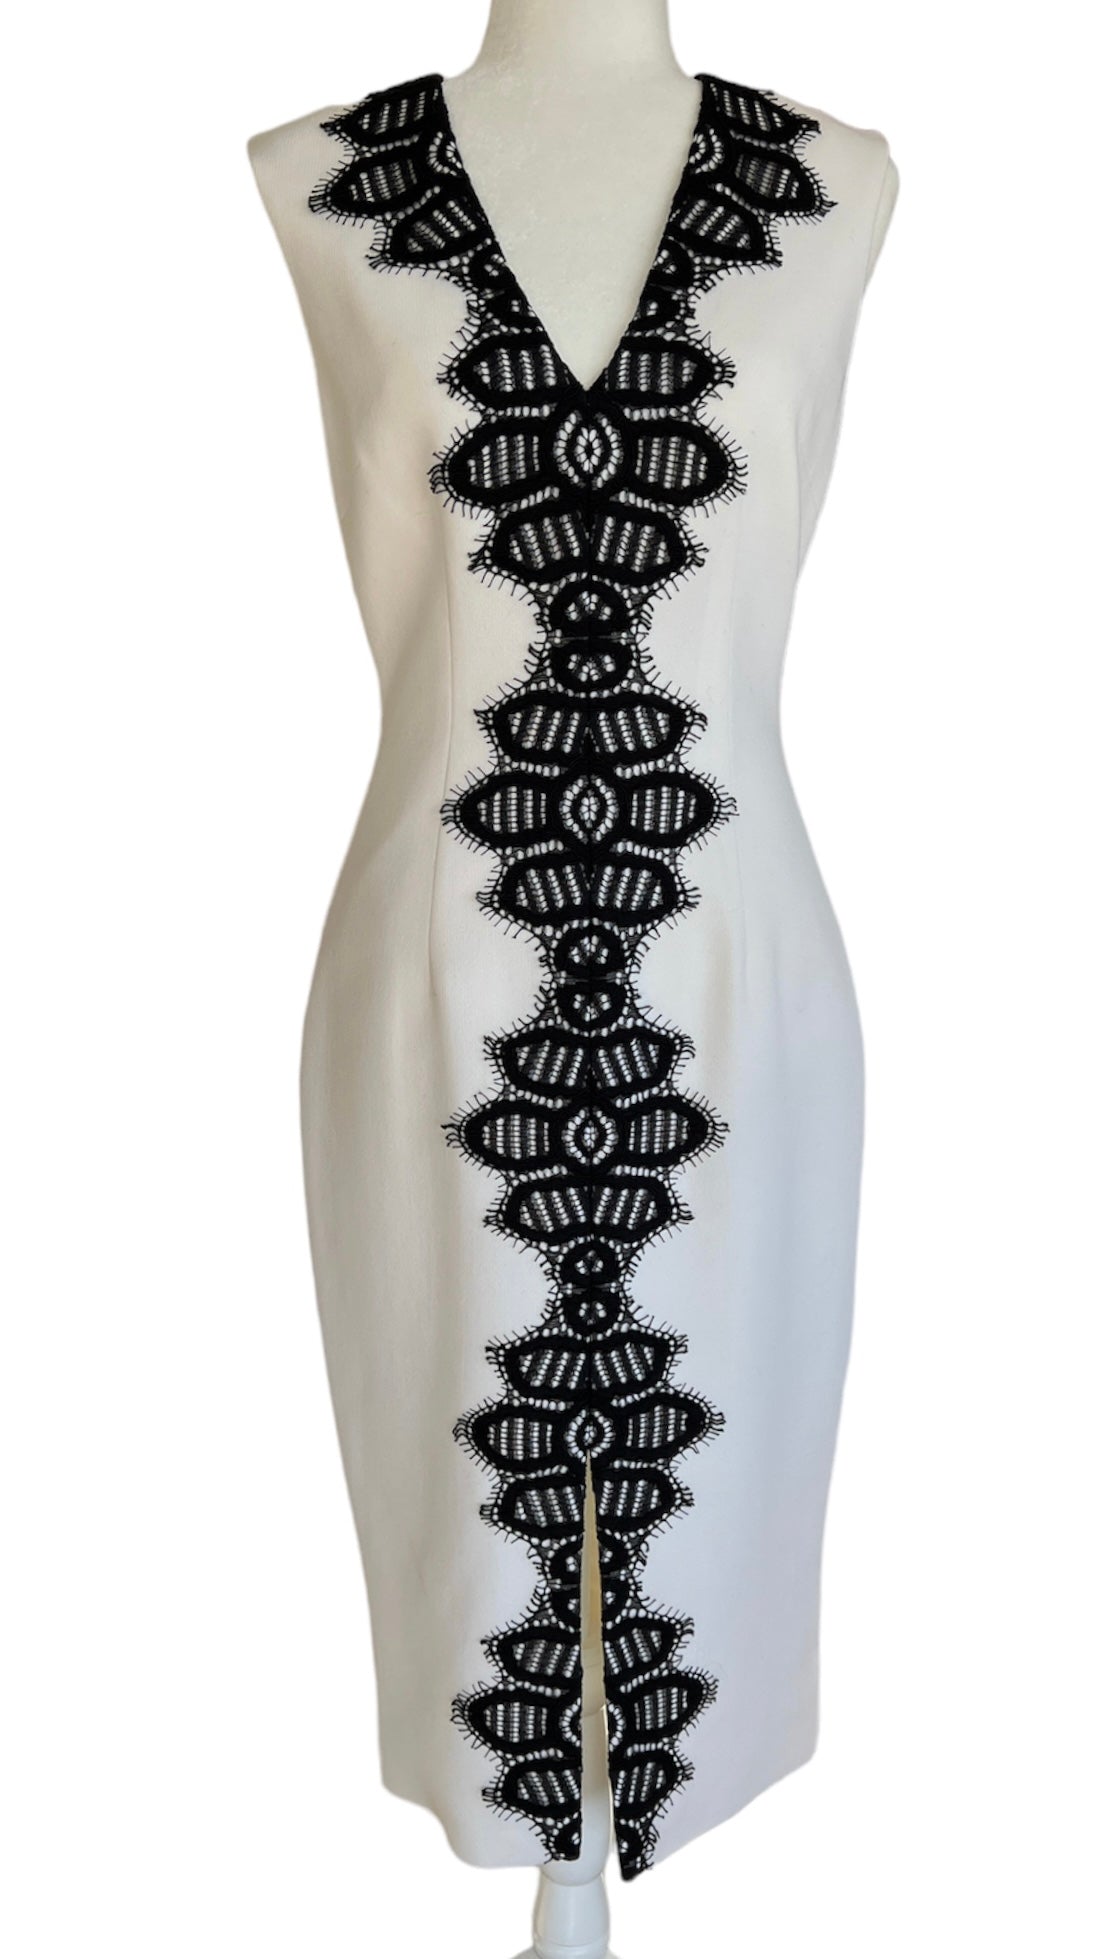 Lela Rose Ivory Sheath with Black Detail Dress, 4